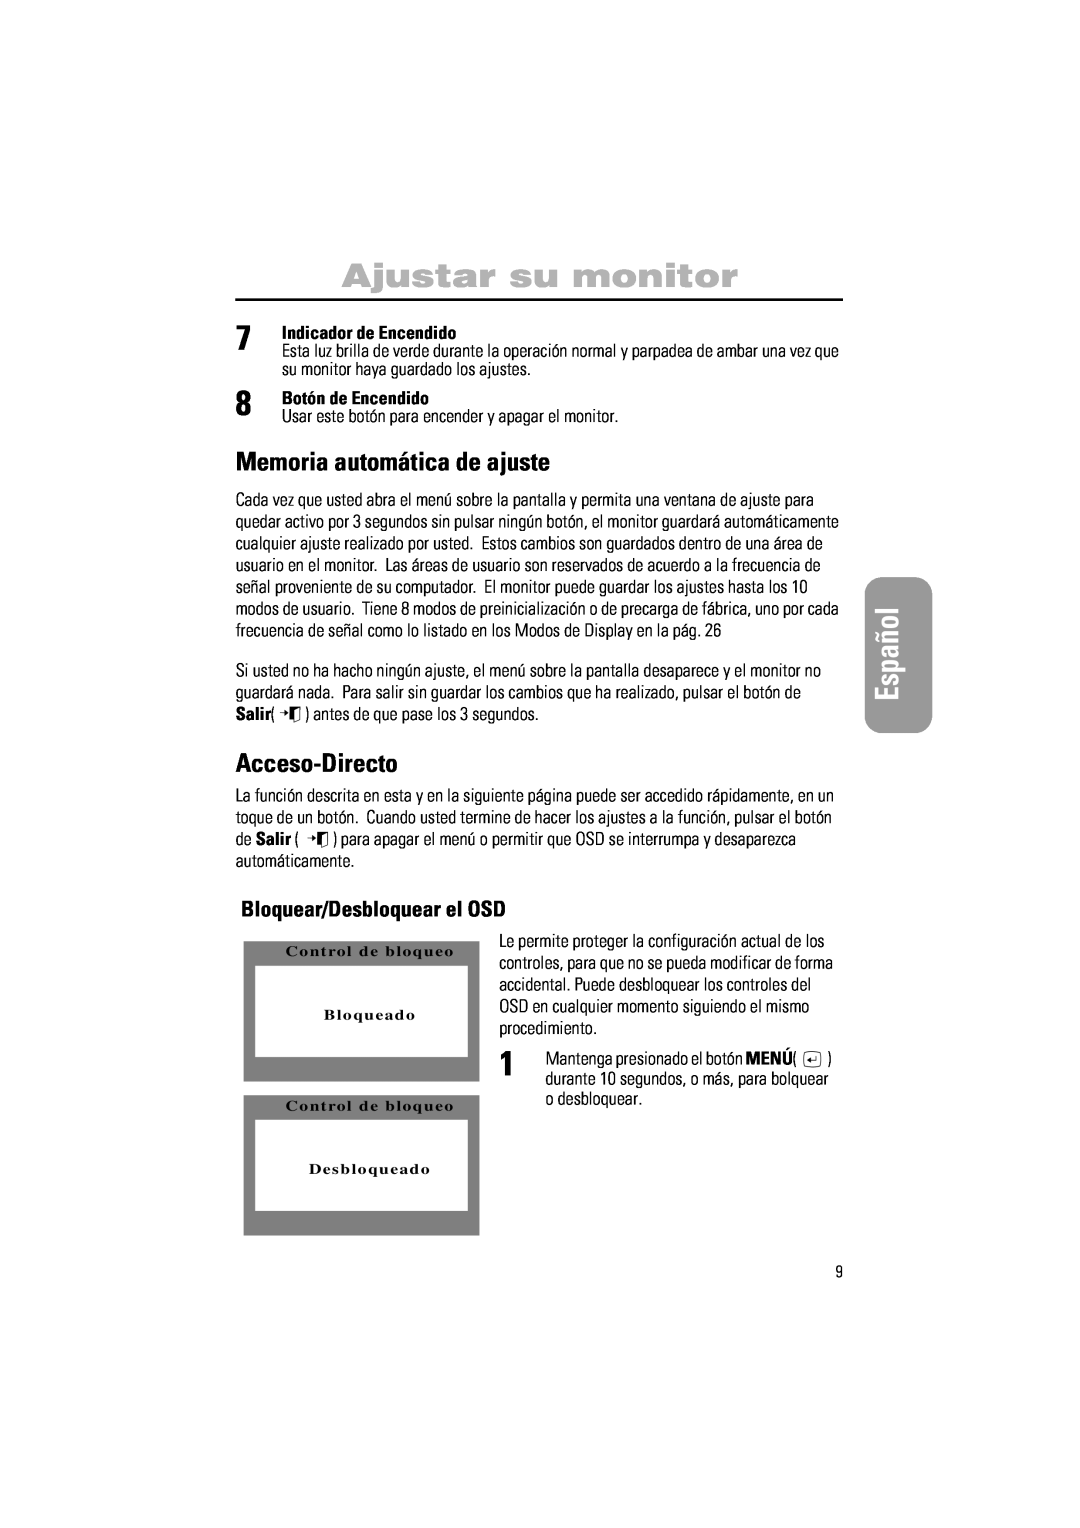 Samsung PG17IS Memoria automática de ajuste, Acceso-Directo, Bloquear/Desbloquear el OSD, Indicador de Encendido, Español 